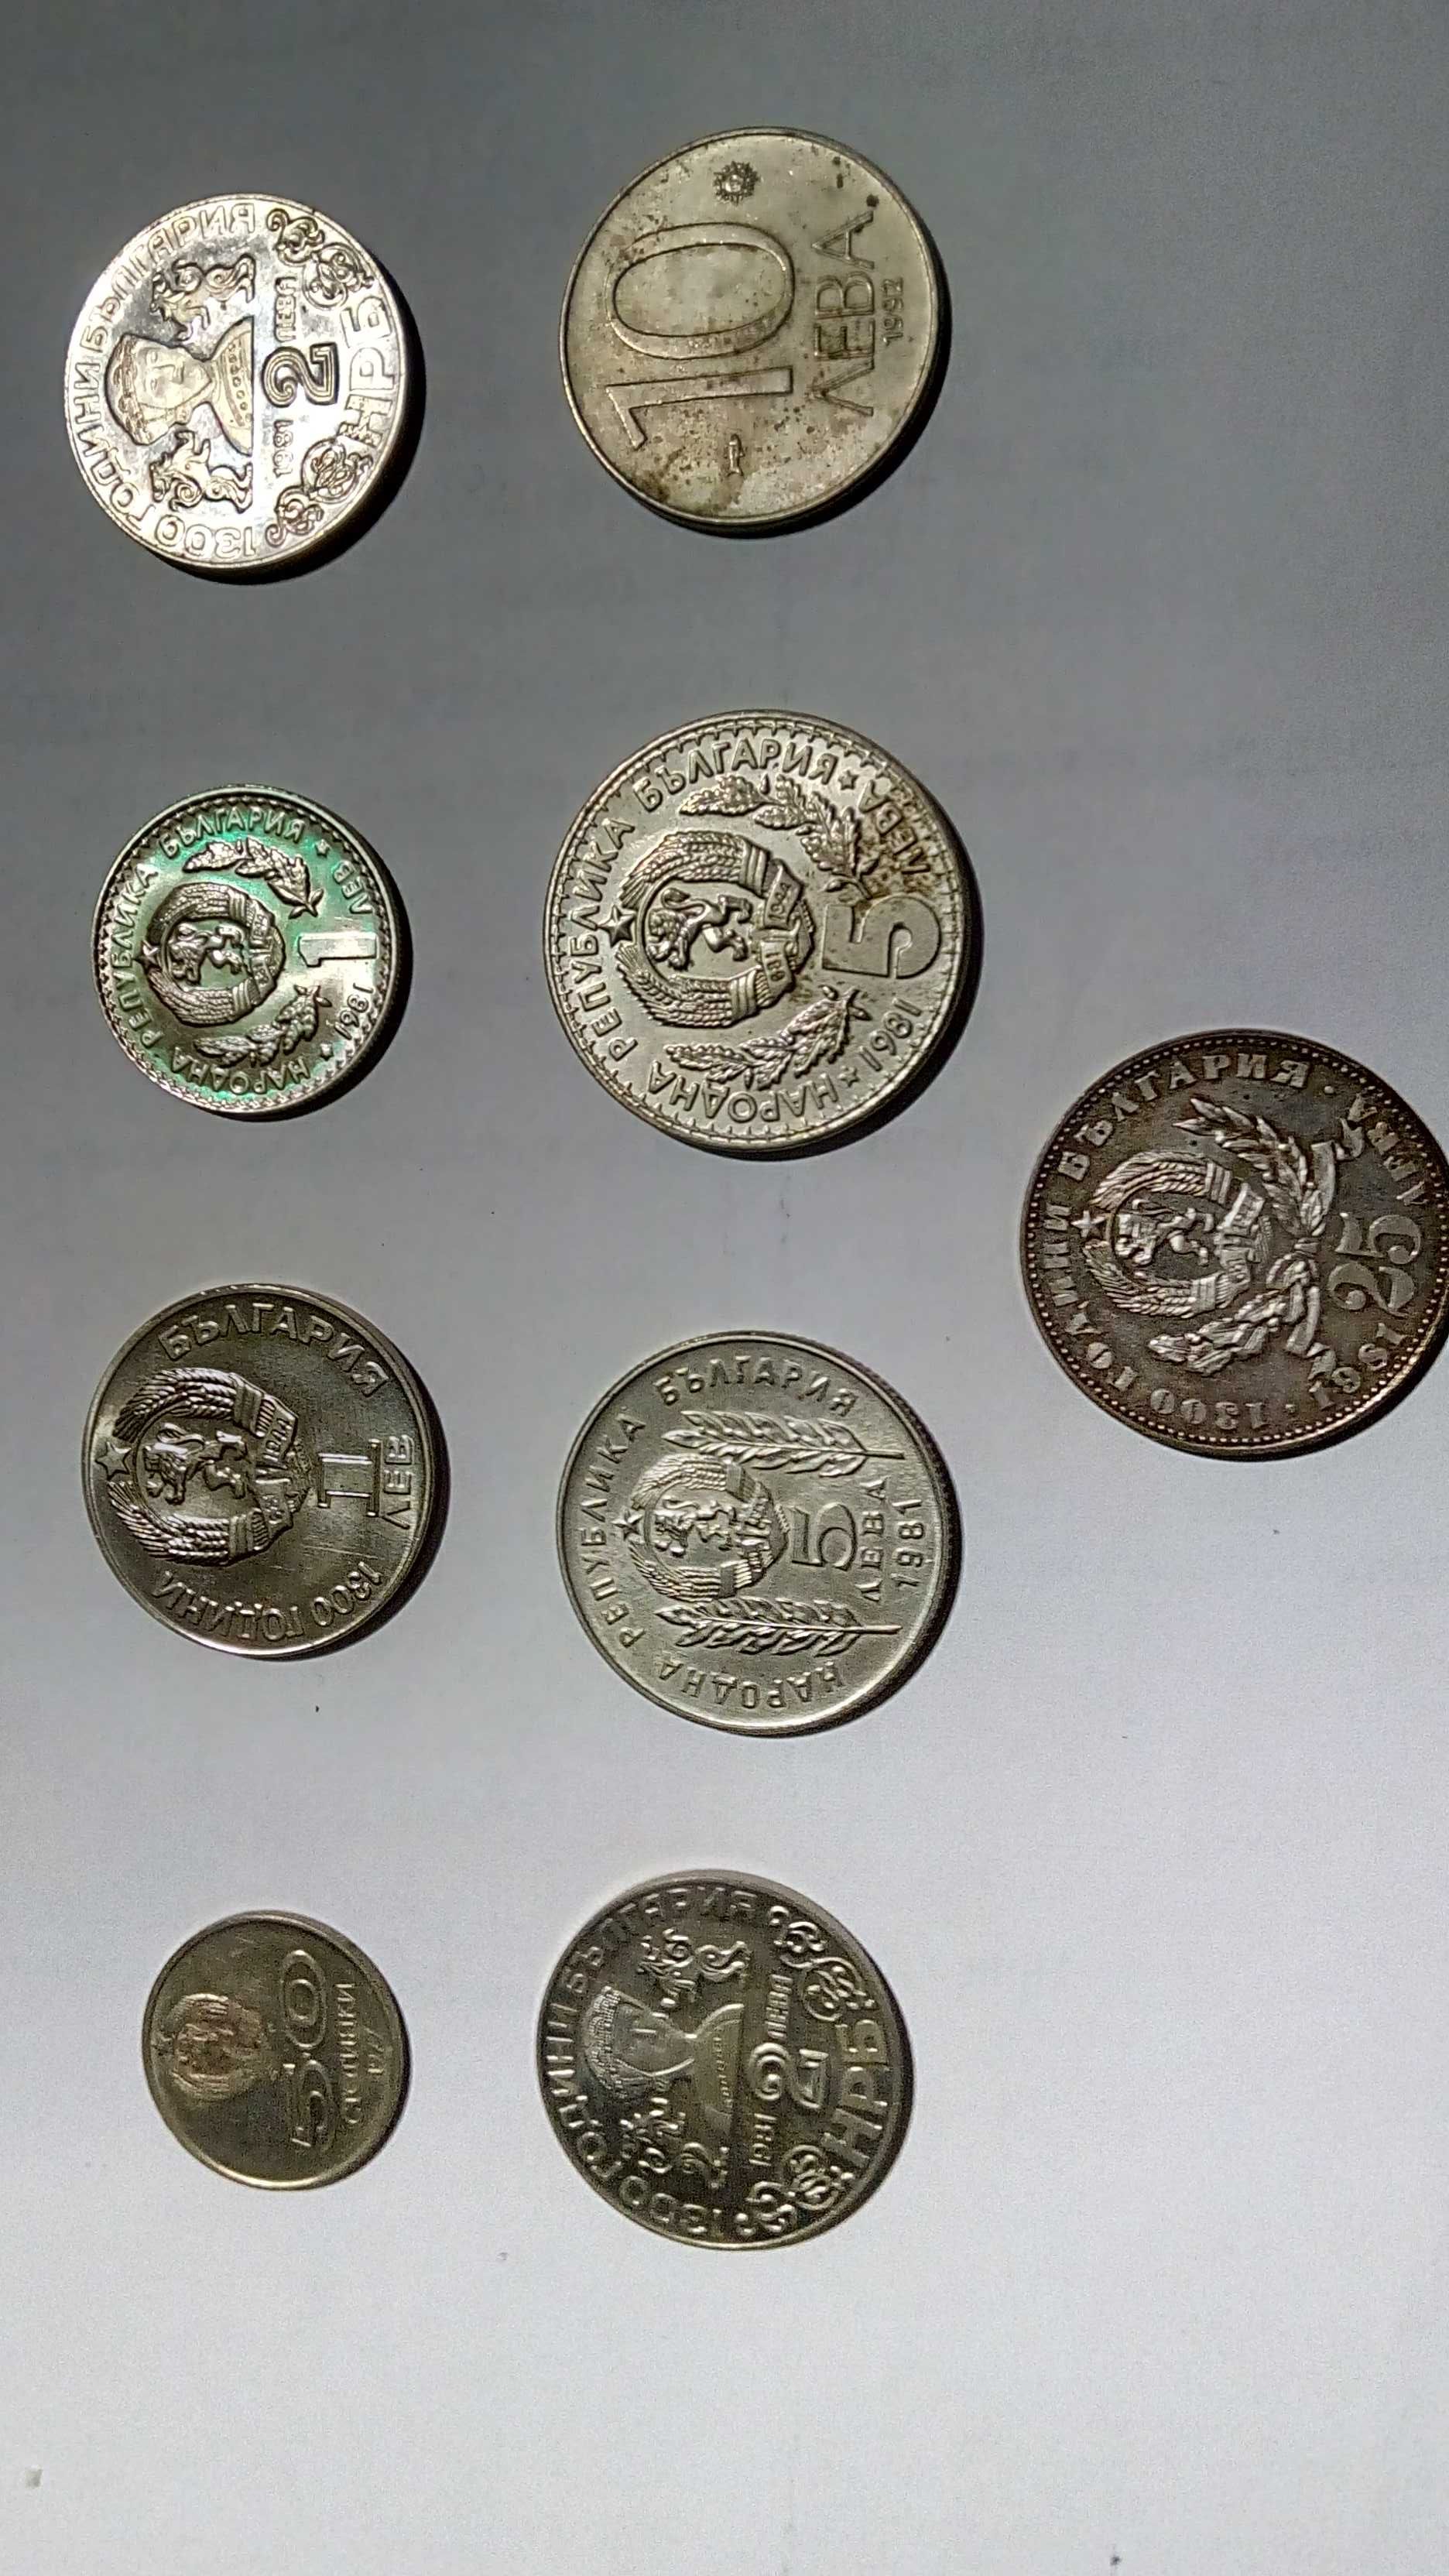 Юбелейни монети от 50 стотинки 1,2,5,10 и 25 лева